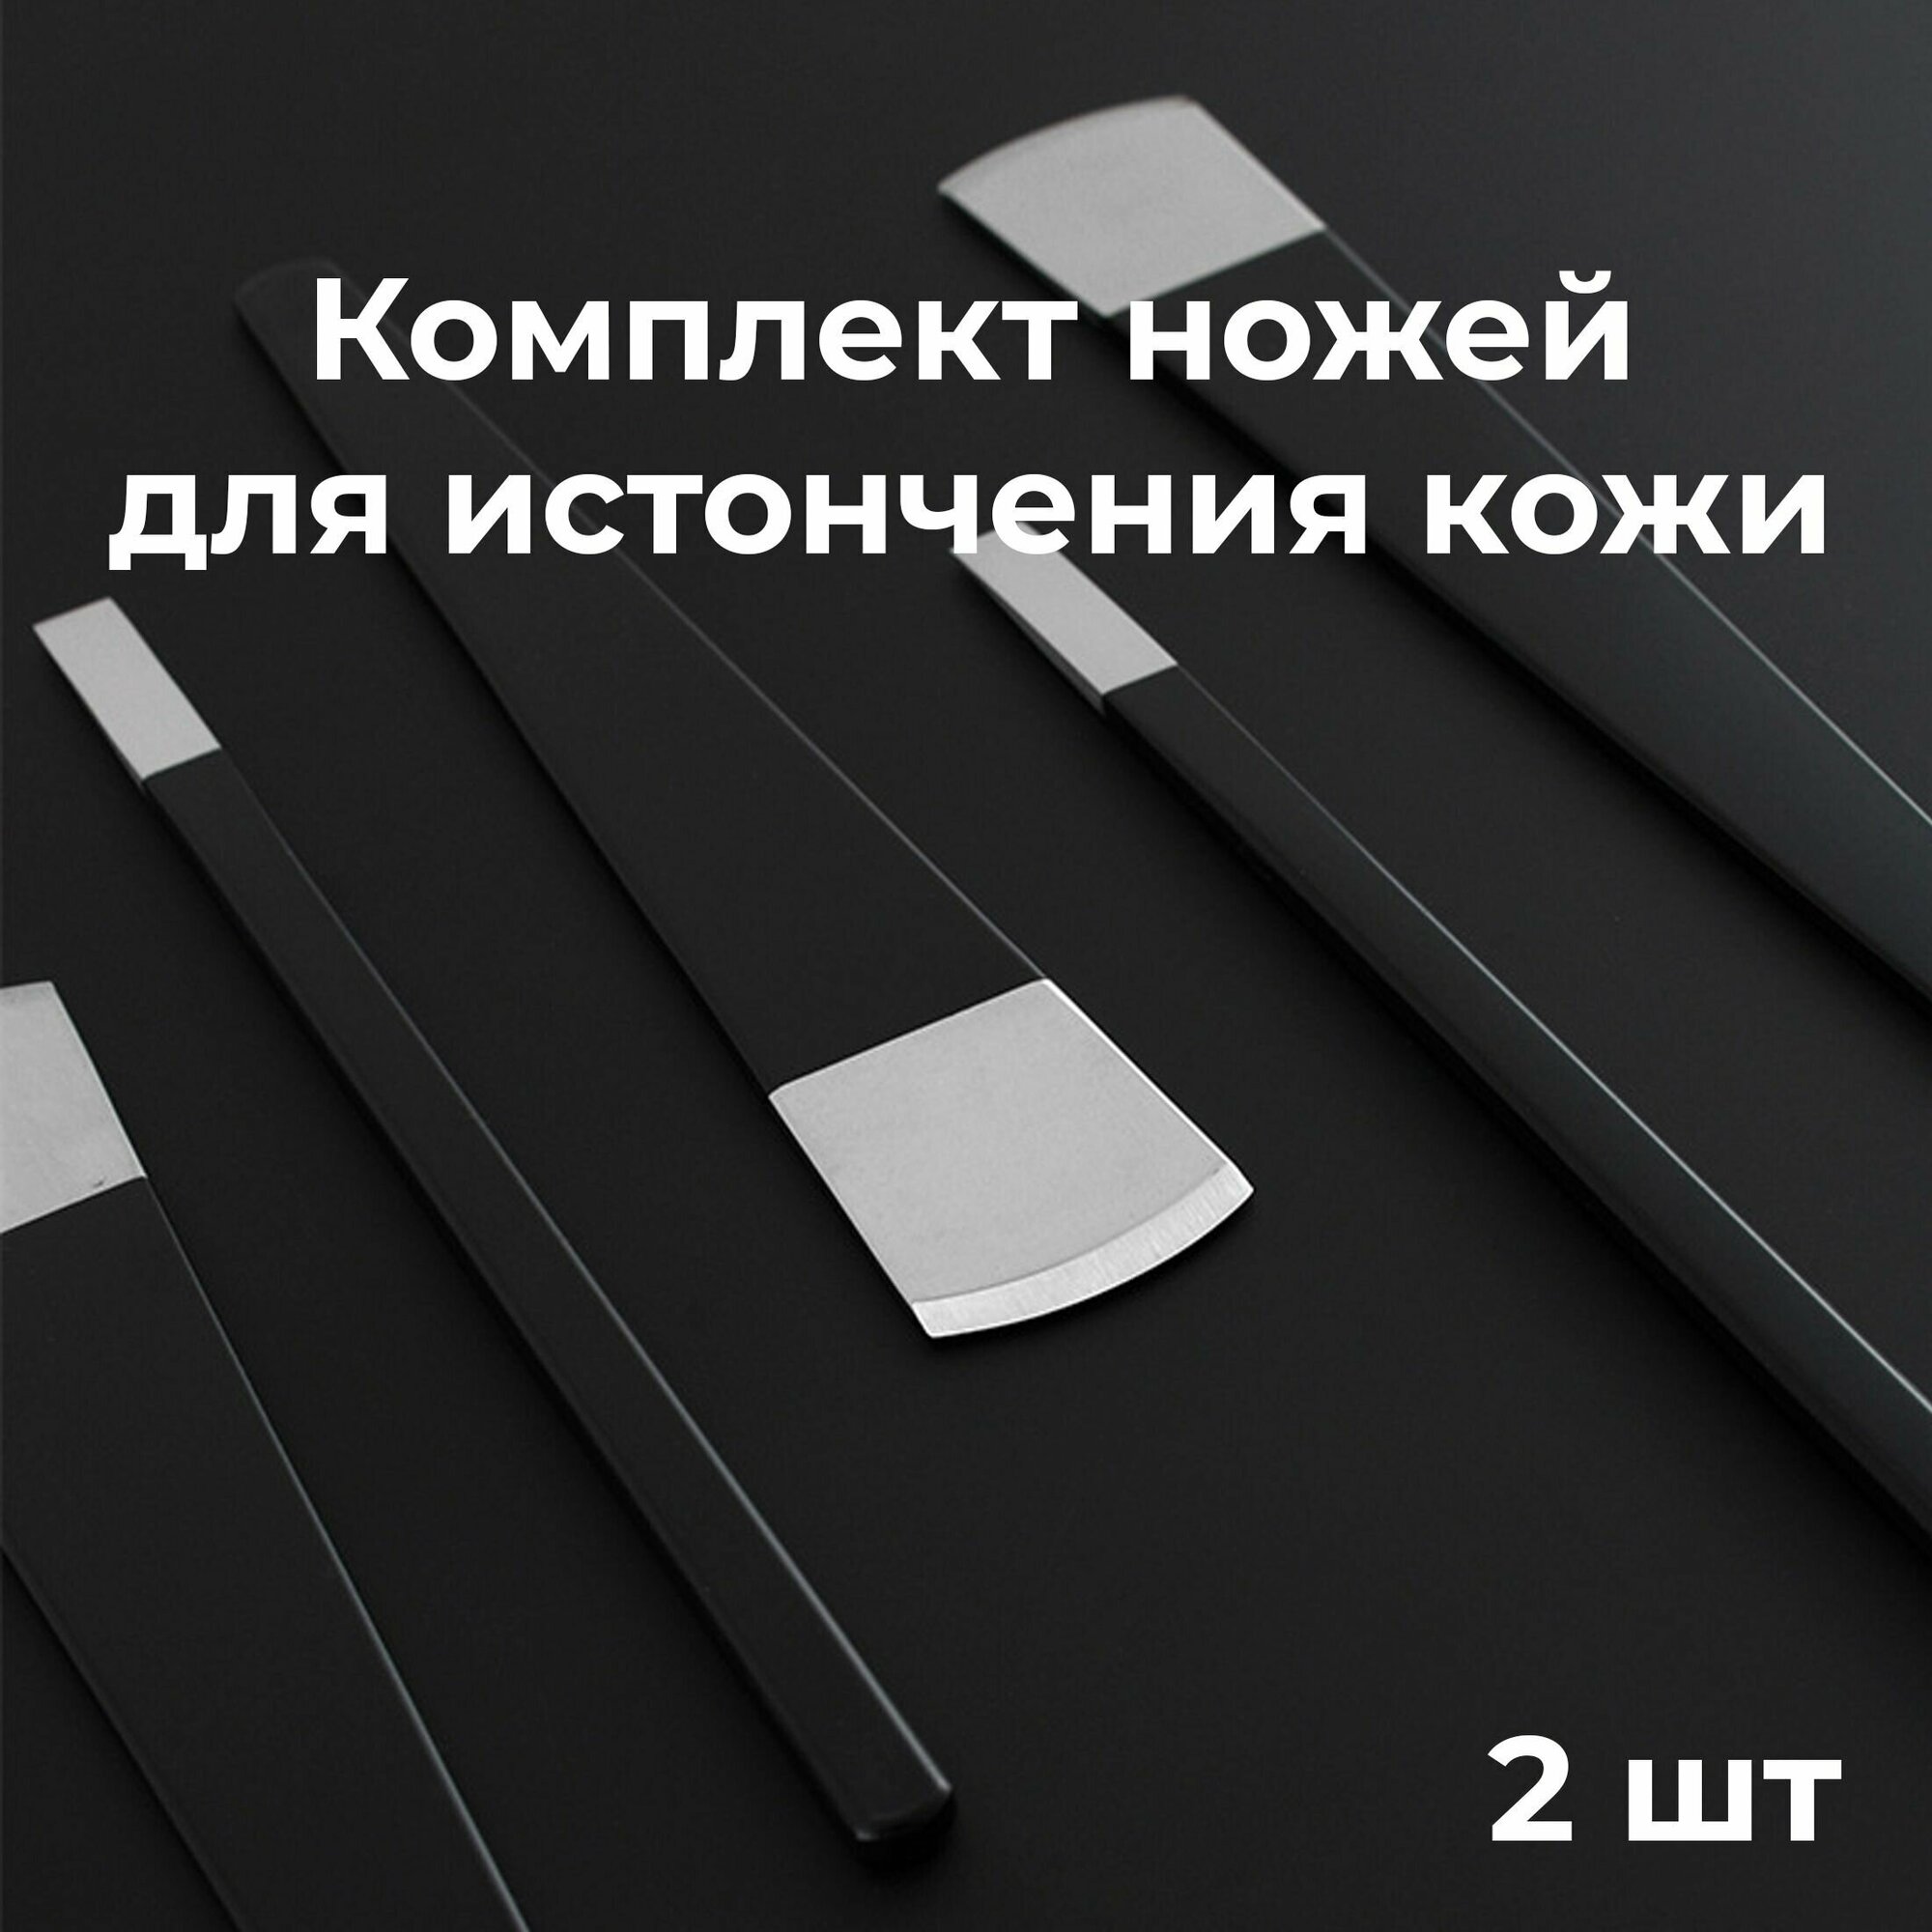 Комплект ножей для истончения кожи 2 шт, 6 мм, 25 мм